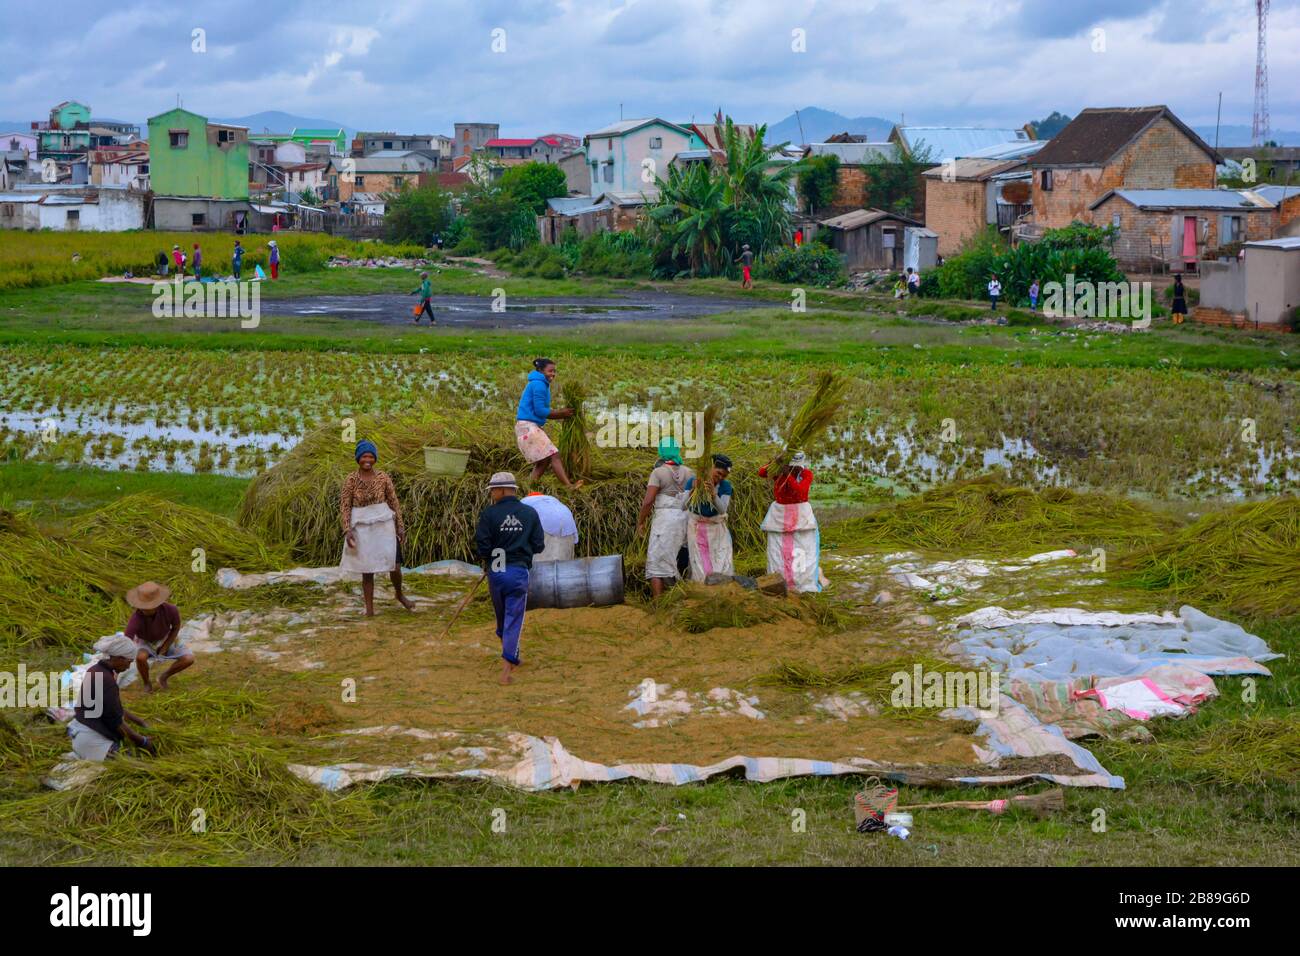 Raccolta di riso in piantagione. Una bella scena di gente africana impegnata in campi di riso verde e giallo, raccolta e essiccazione di piante di riso. Donne sorridente Foto Stock